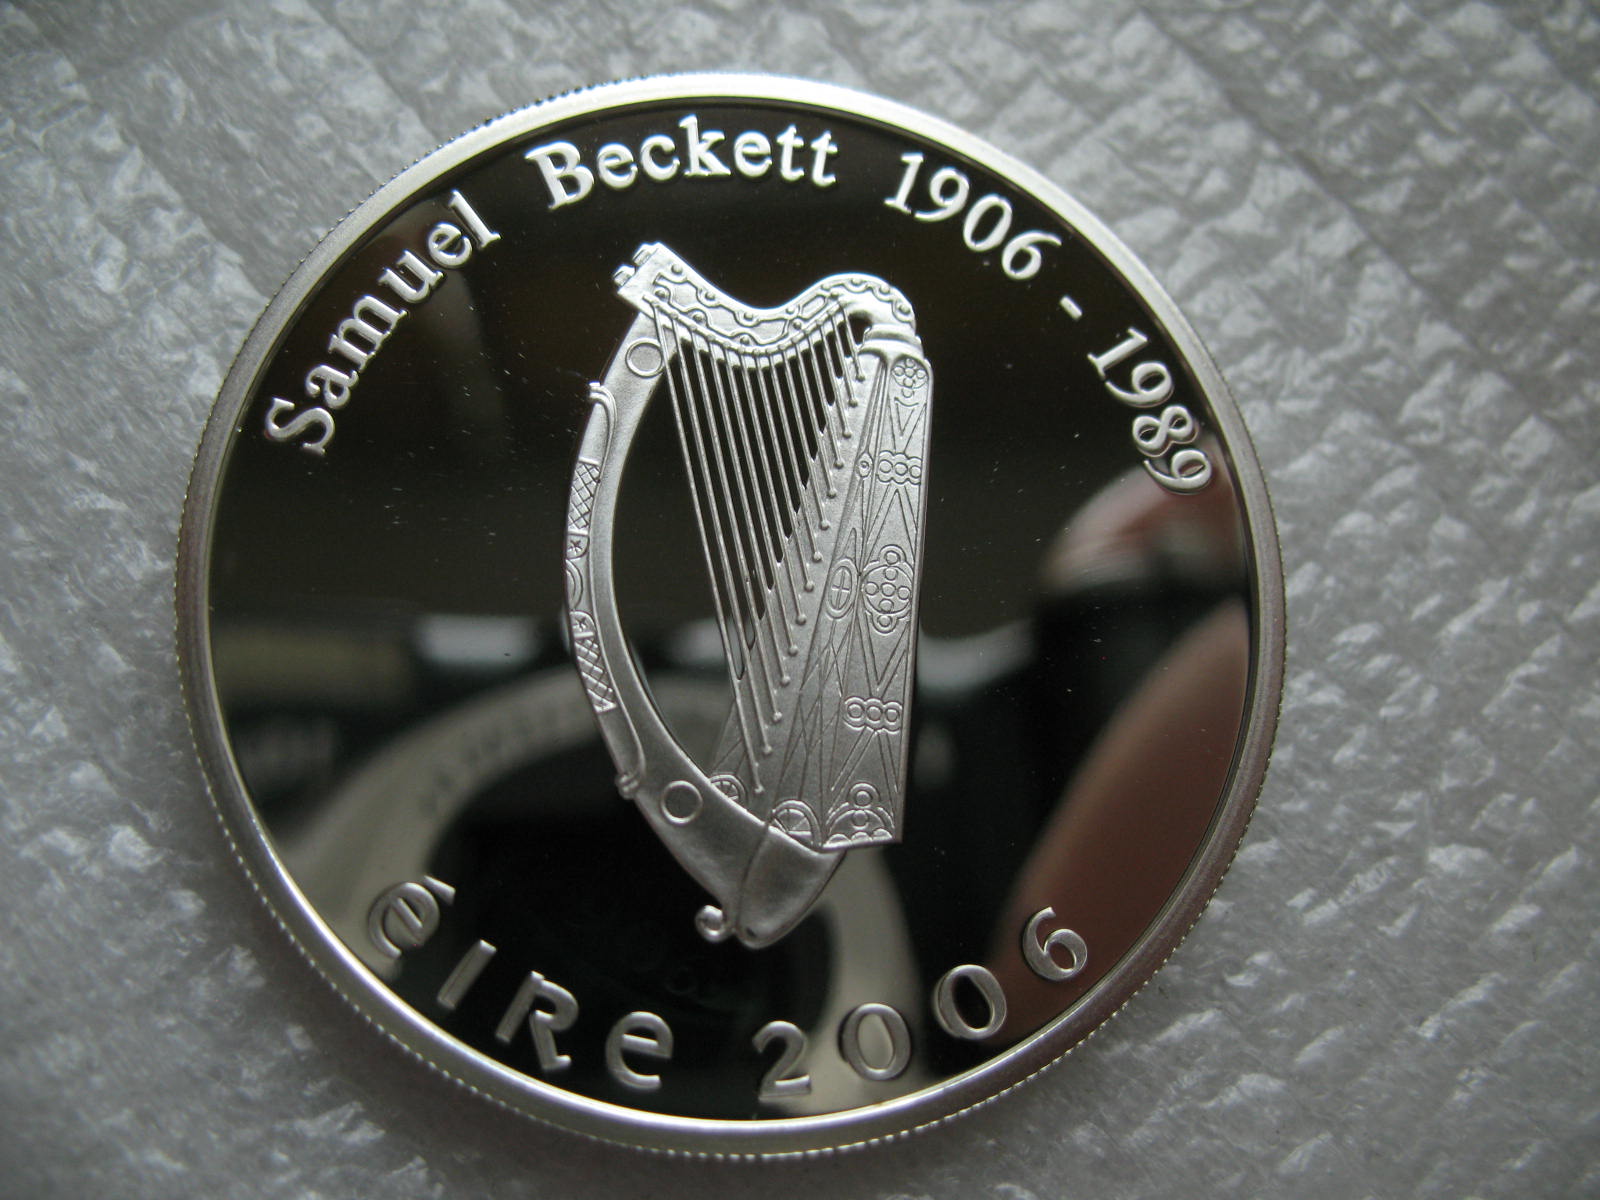 2006年爱尔兰10欧元人物精制纪念大银币(大图展示)